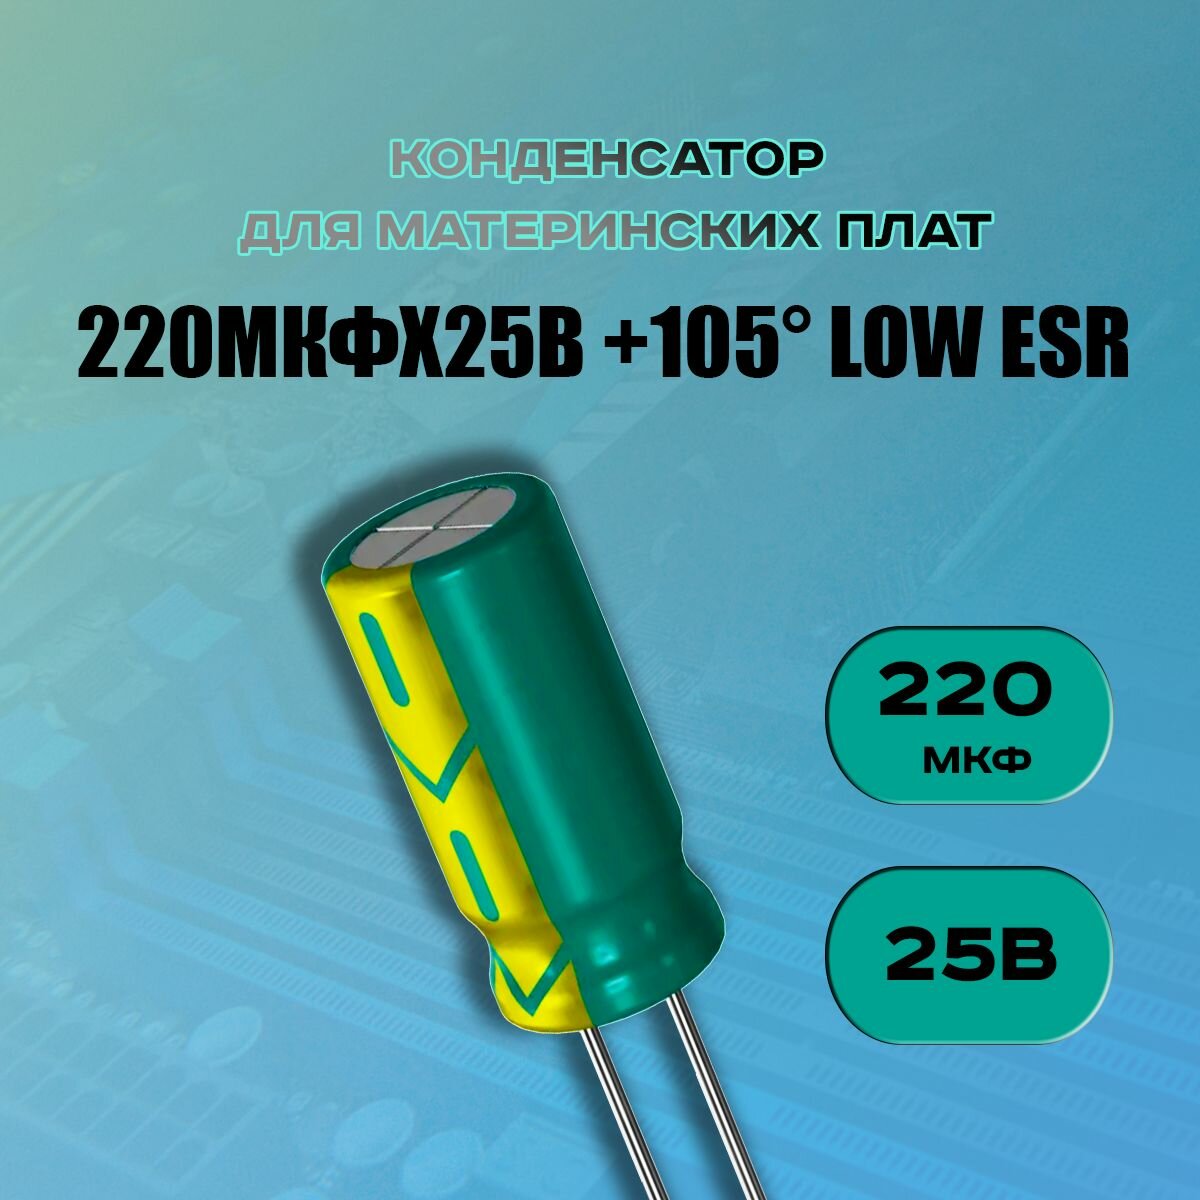 Конденсатор для материнской платы 220 микрофарат 25 Вольт (220uf 25V WL +105 LOW ESR) - 1 шт.